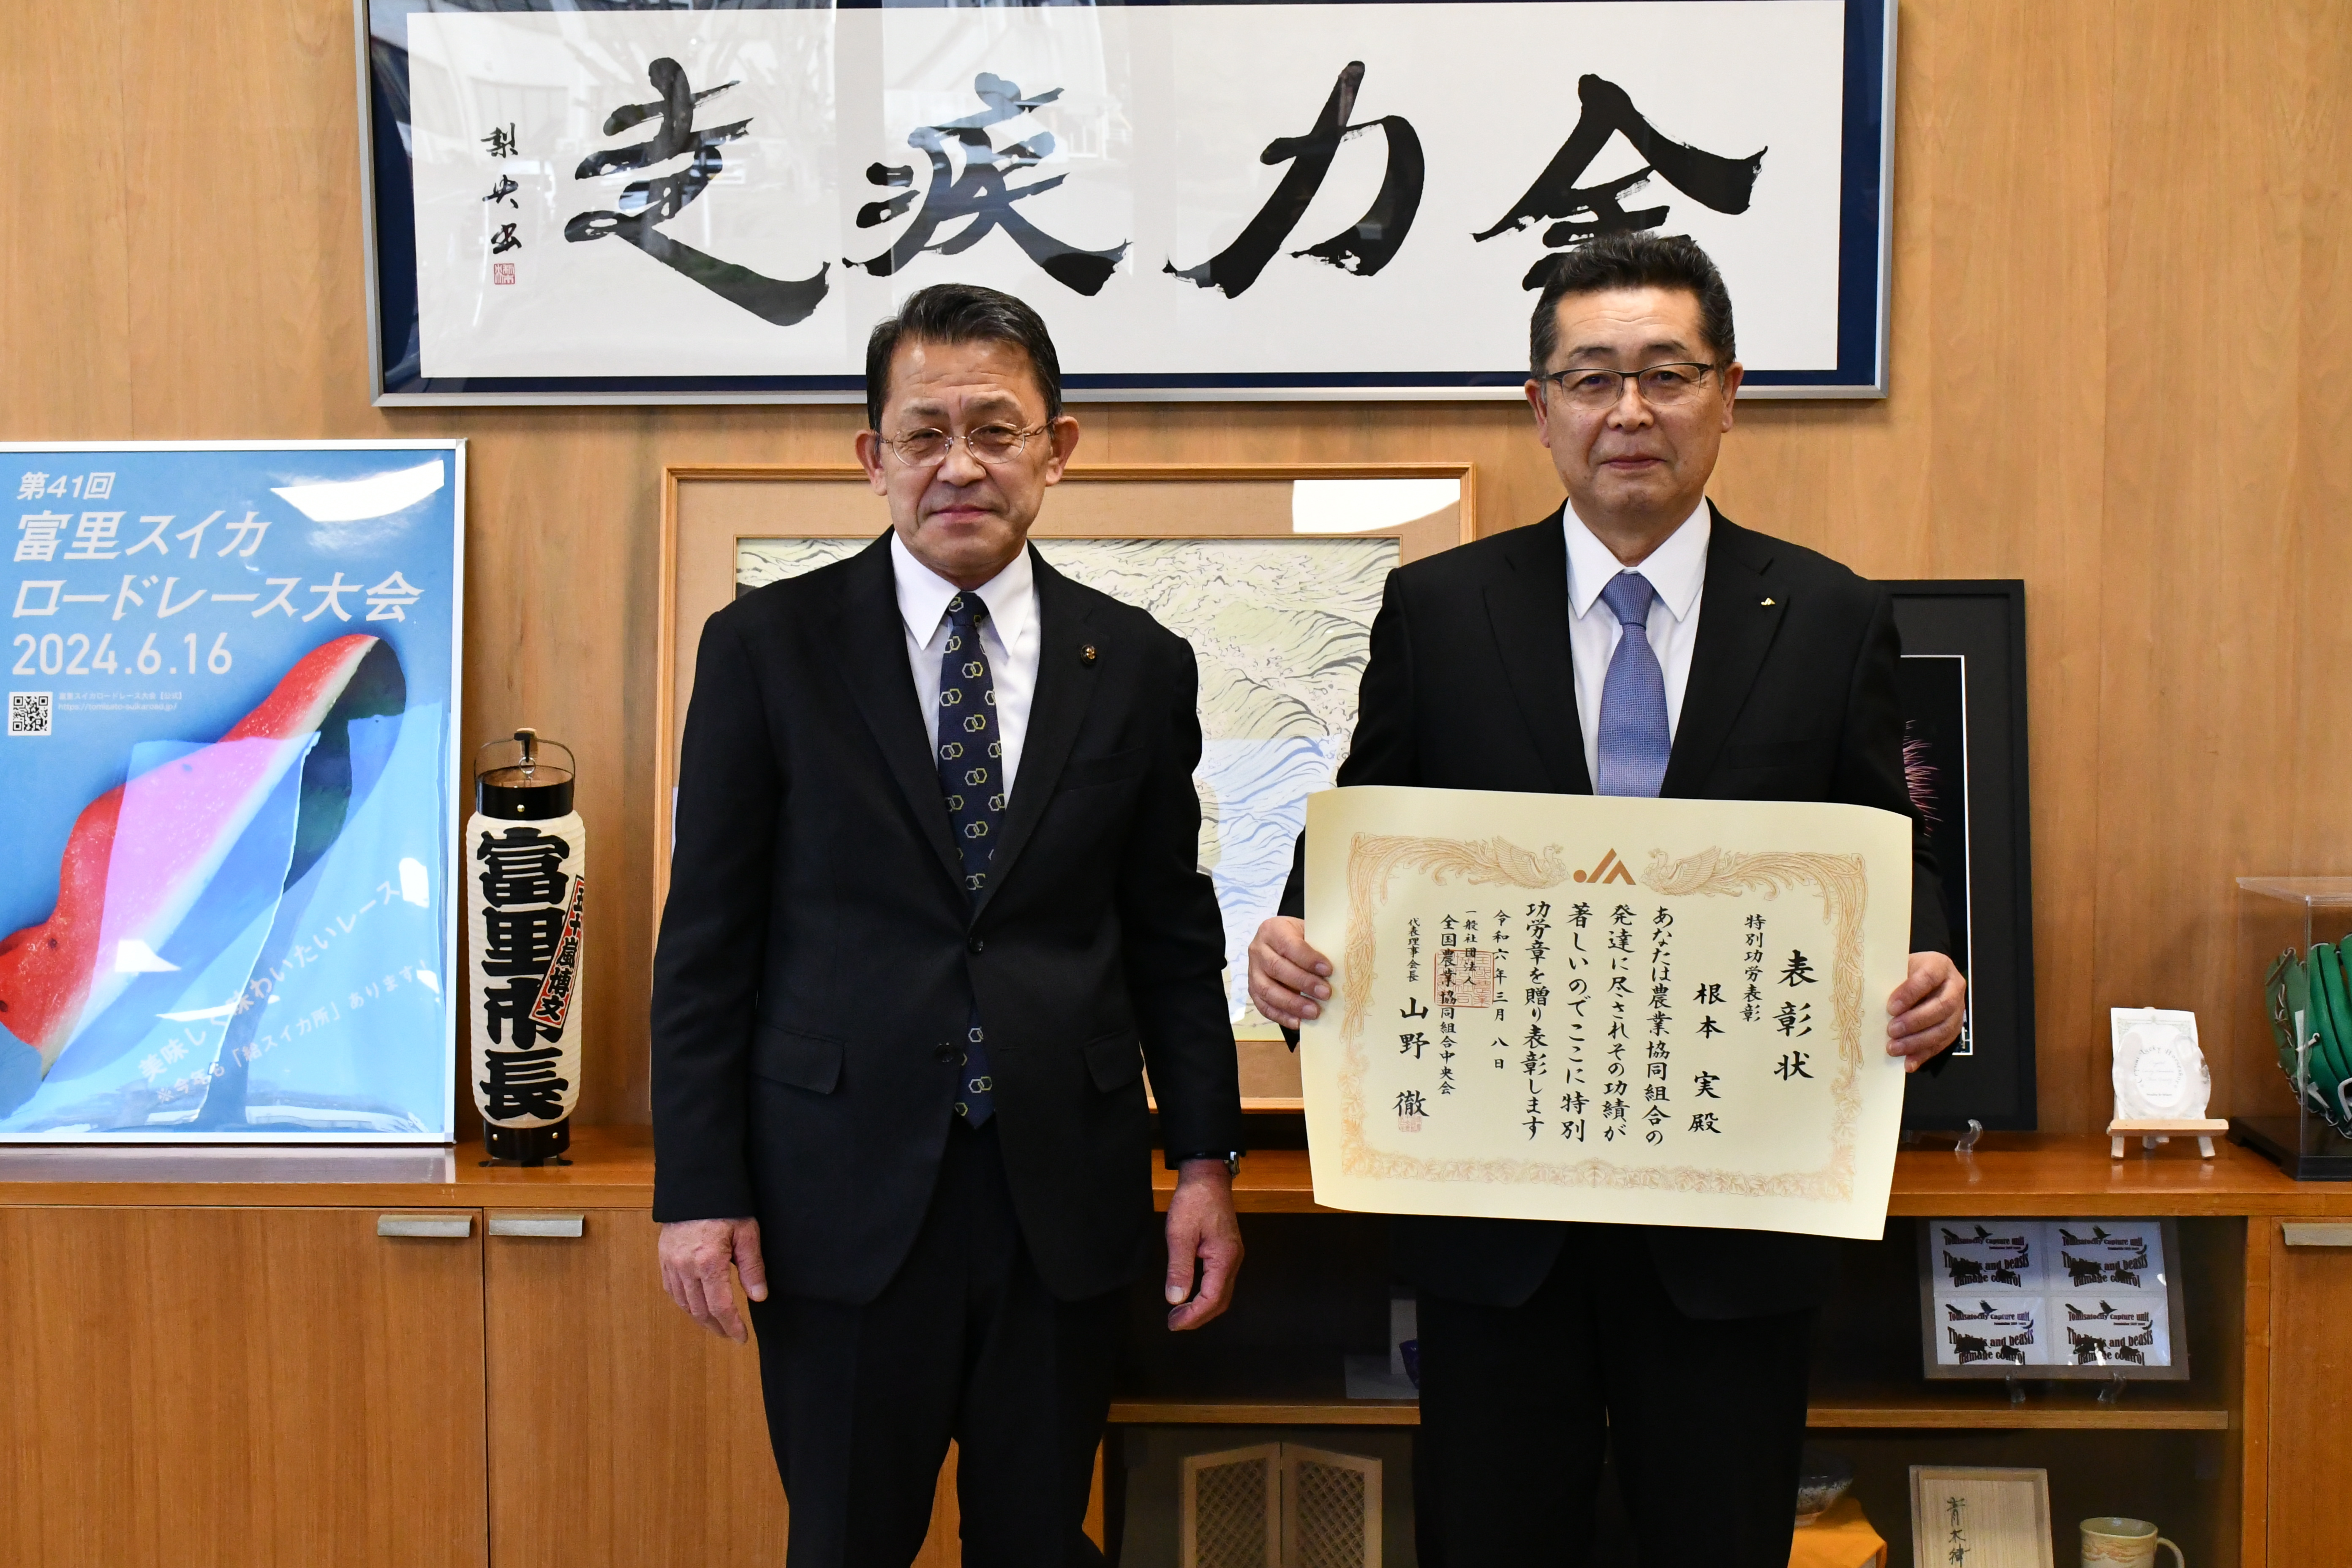 市長と組合長の記念写真